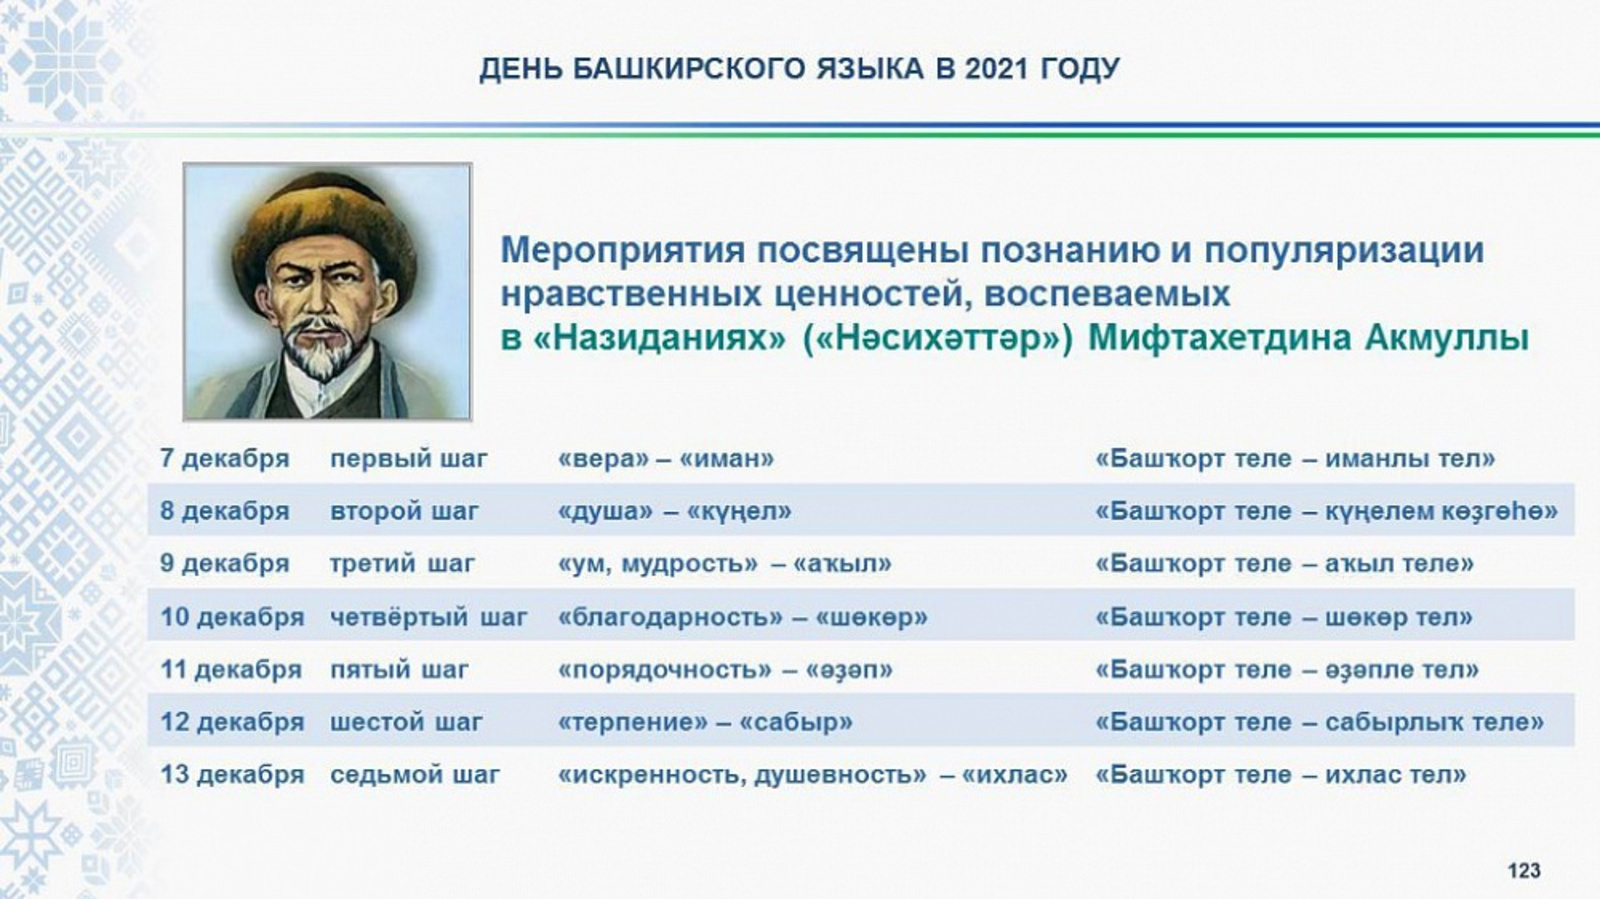 14 декабря в республике отметят День башкирского языка и 190-летие со дня рождения поэта-просветителя Мифтахетдина Акмуллы